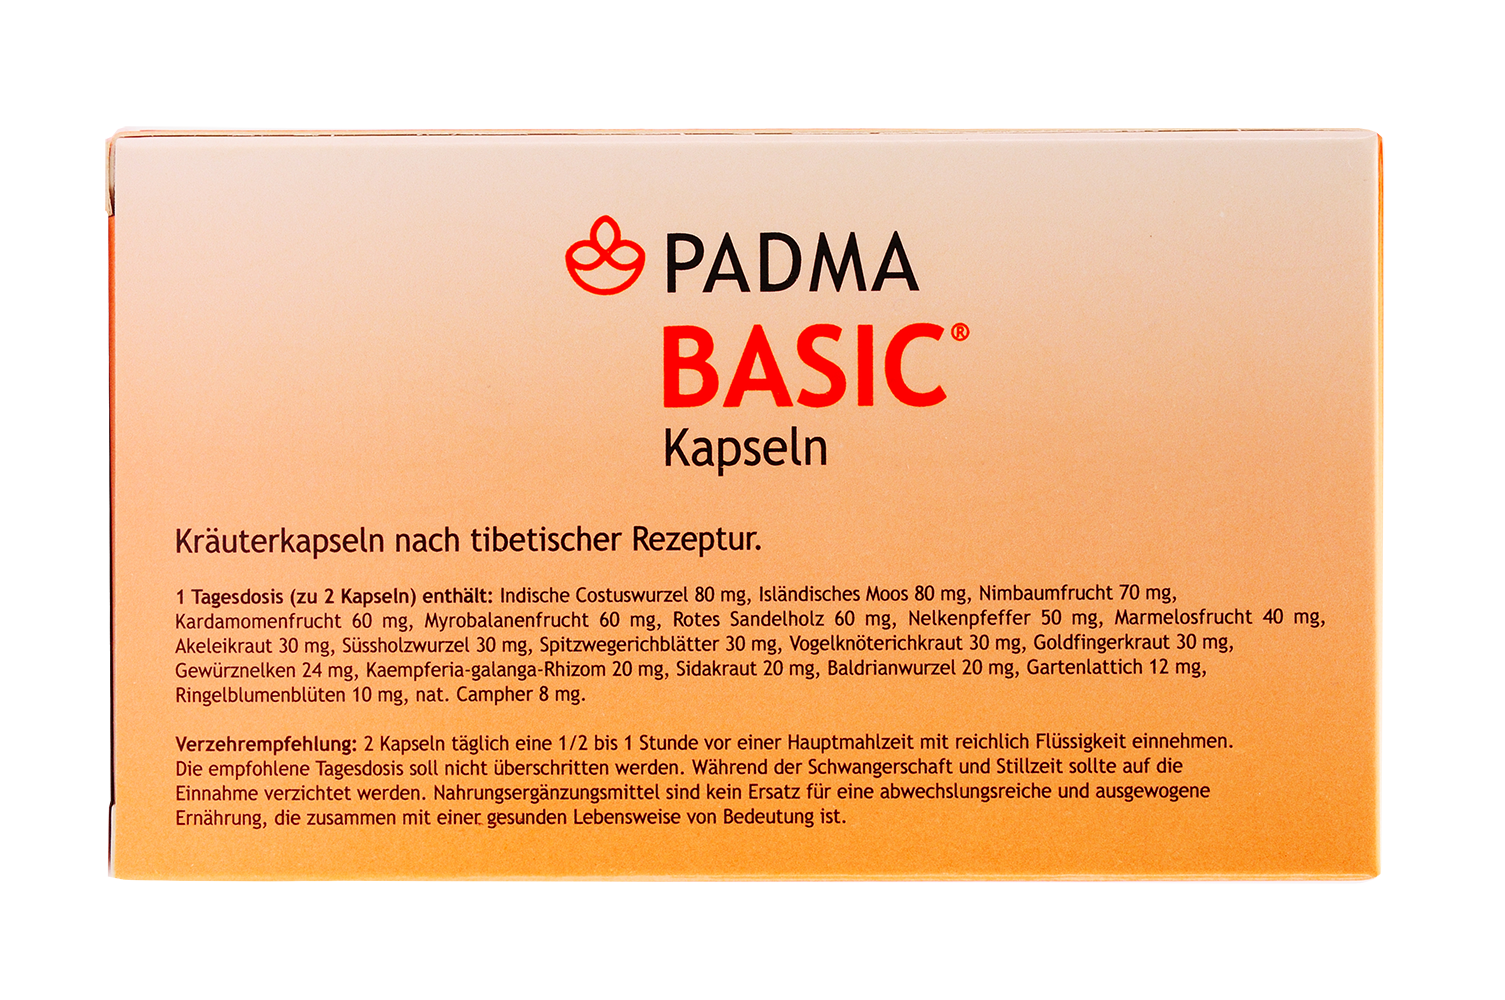 Padma Basic Kapseln